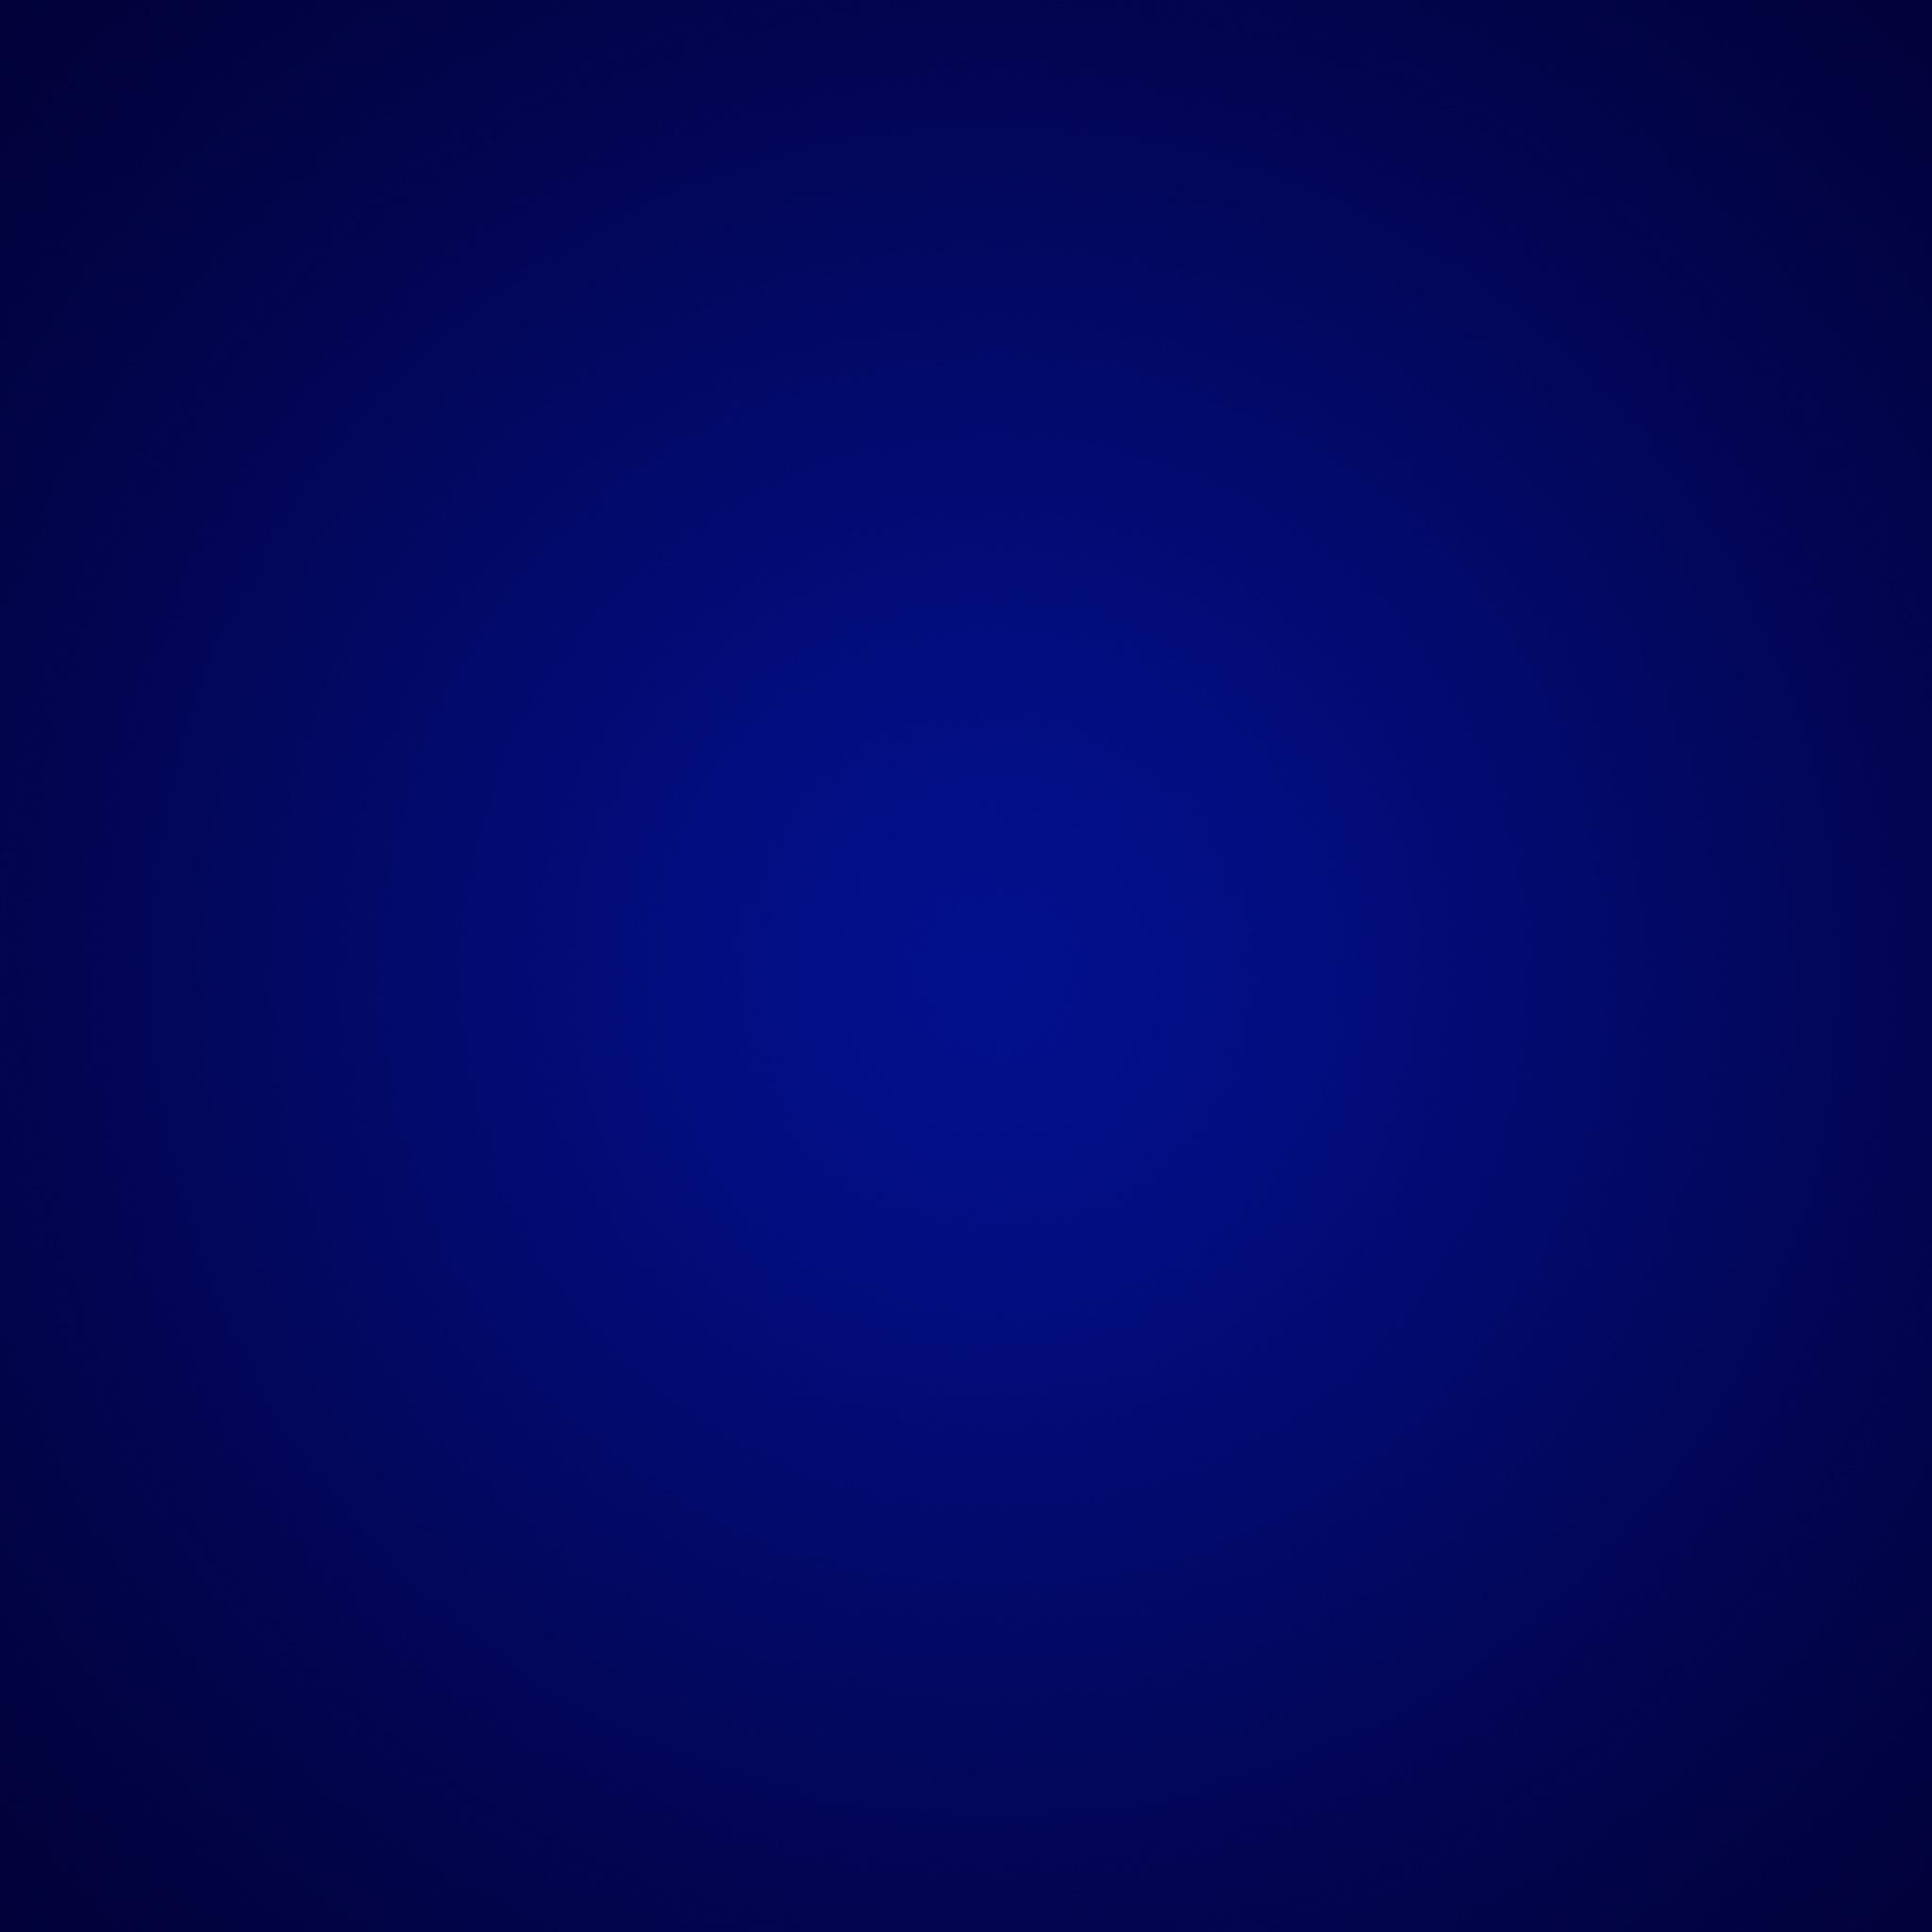 Dark Blue Gradient iPad Air Wallpaper HD Retina